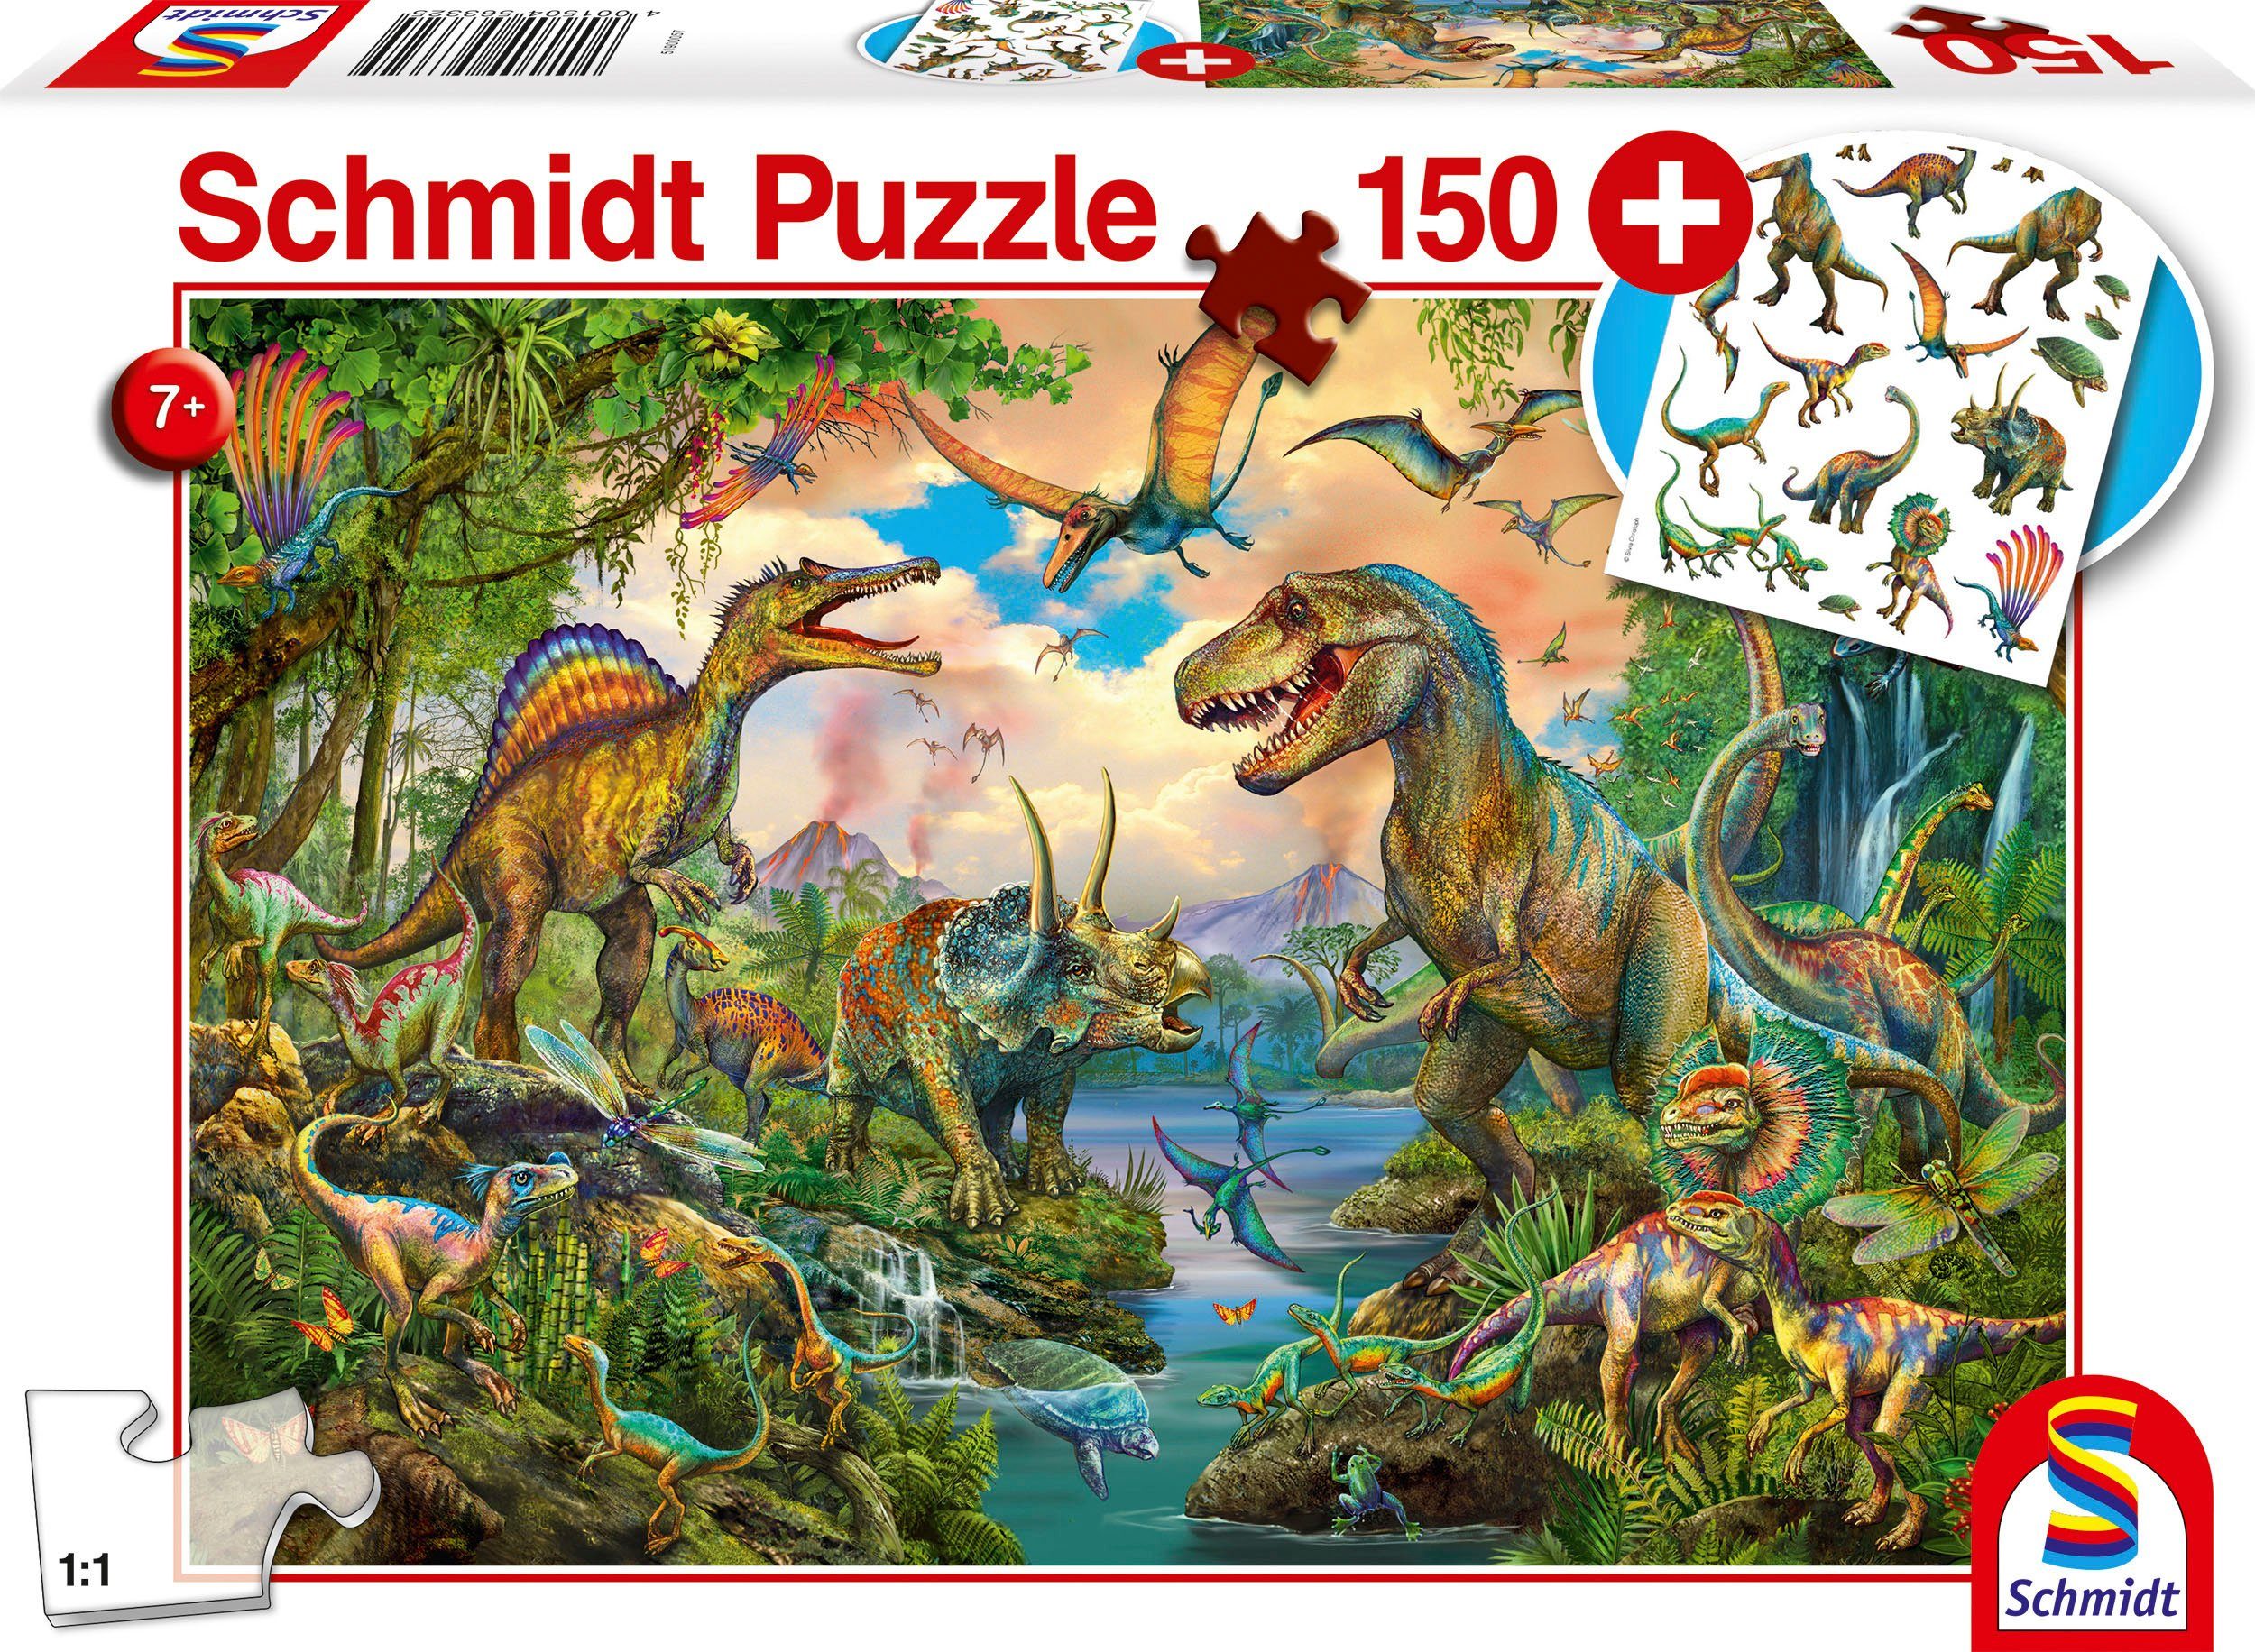 Schmidt Spiele Puzzle (Tattoos in Dinos, Dinosaurier); Puzzleteile, Wilde Europe Add-on mit Made 150